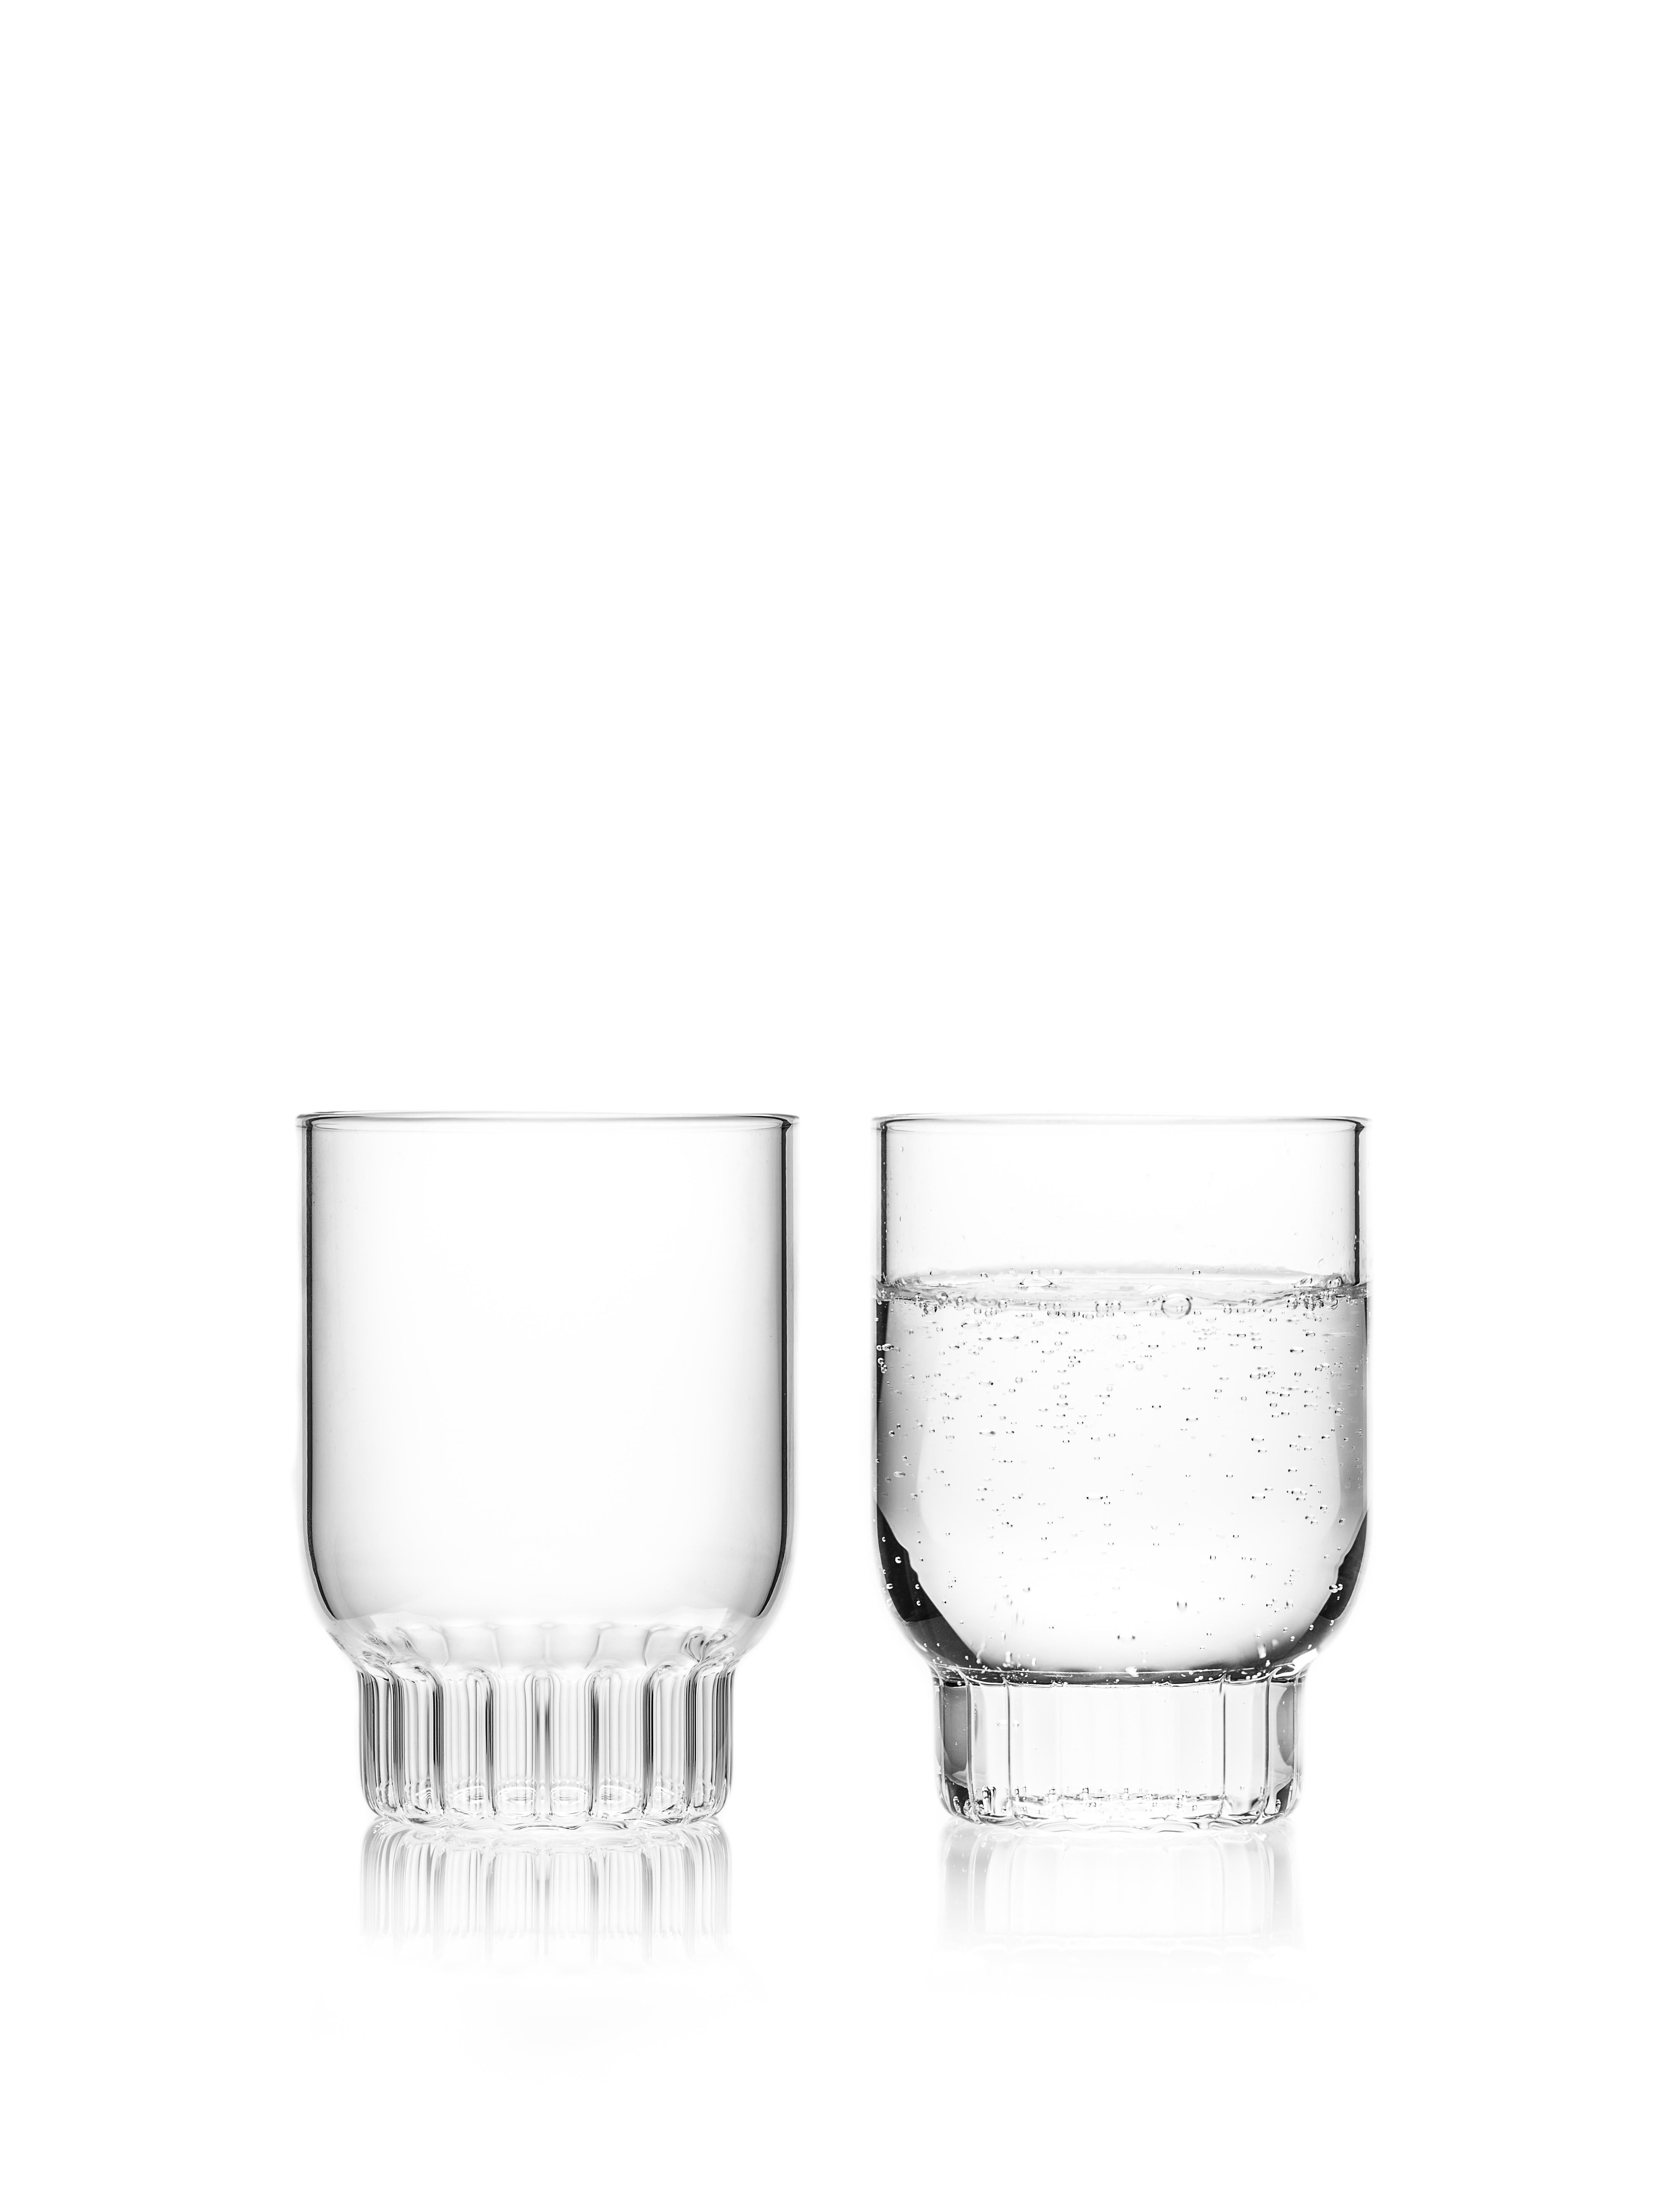 Set aus zwei mittelgroßen Rasori-Gläsern.

Die klare tschechische Brille Rasori Medium ist die Lieblingsstraße der Designerin in Mailand, ihrer zweiten Heimat. Sie ist eine spielerische und delikate Kombination von Materialien und Formen, genau